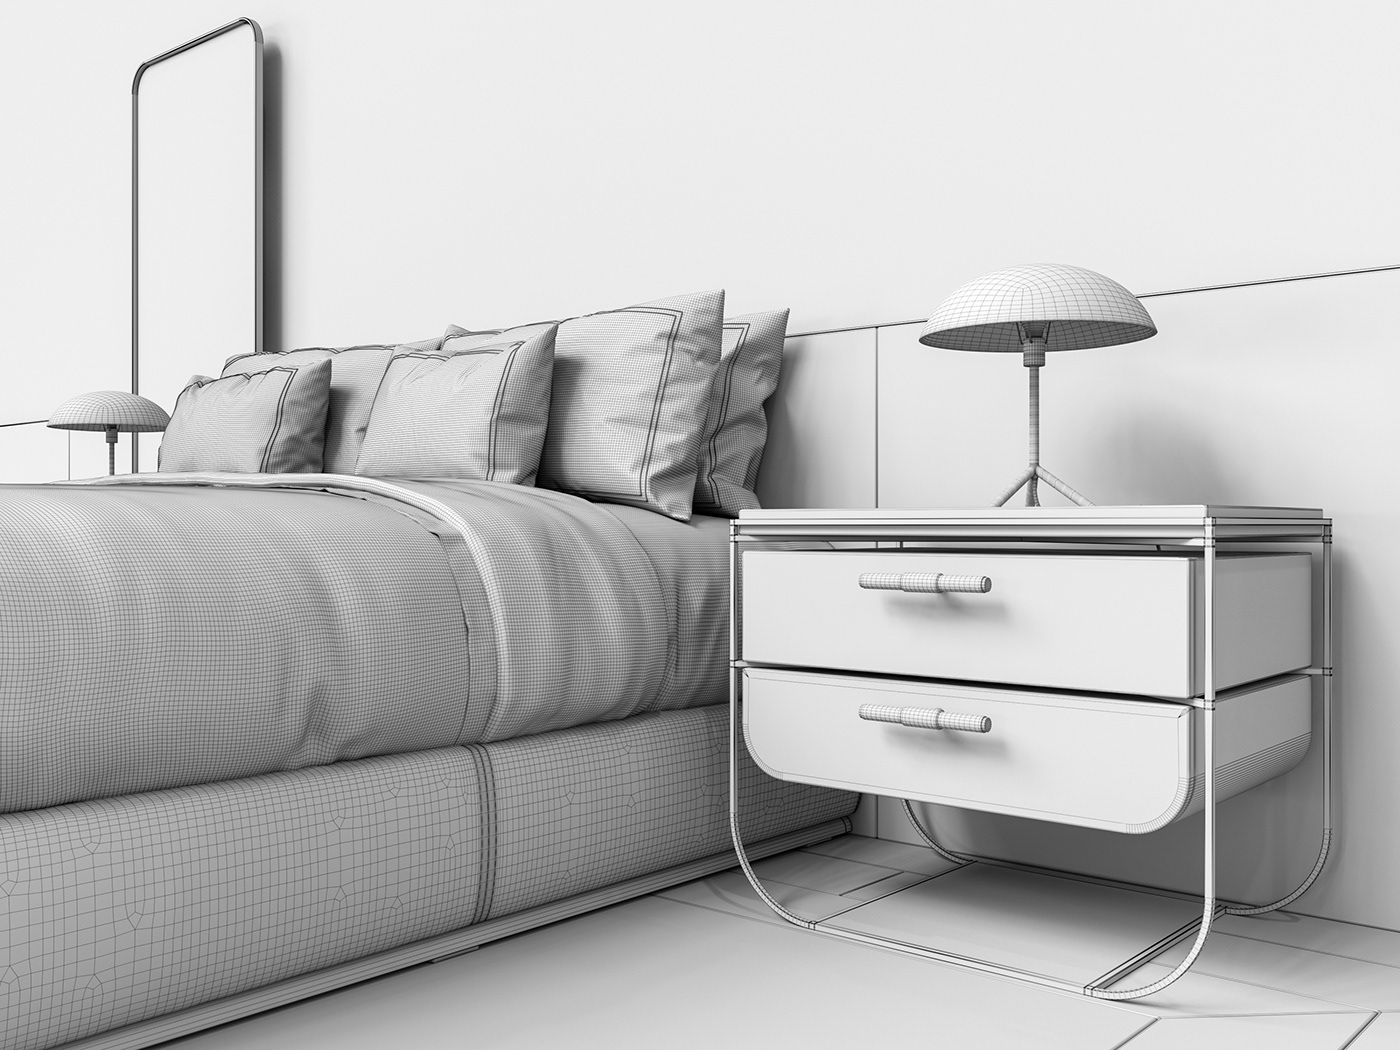 3D model 3d modeler visualizer bedroom 3d Models design Vizualization Interior modern